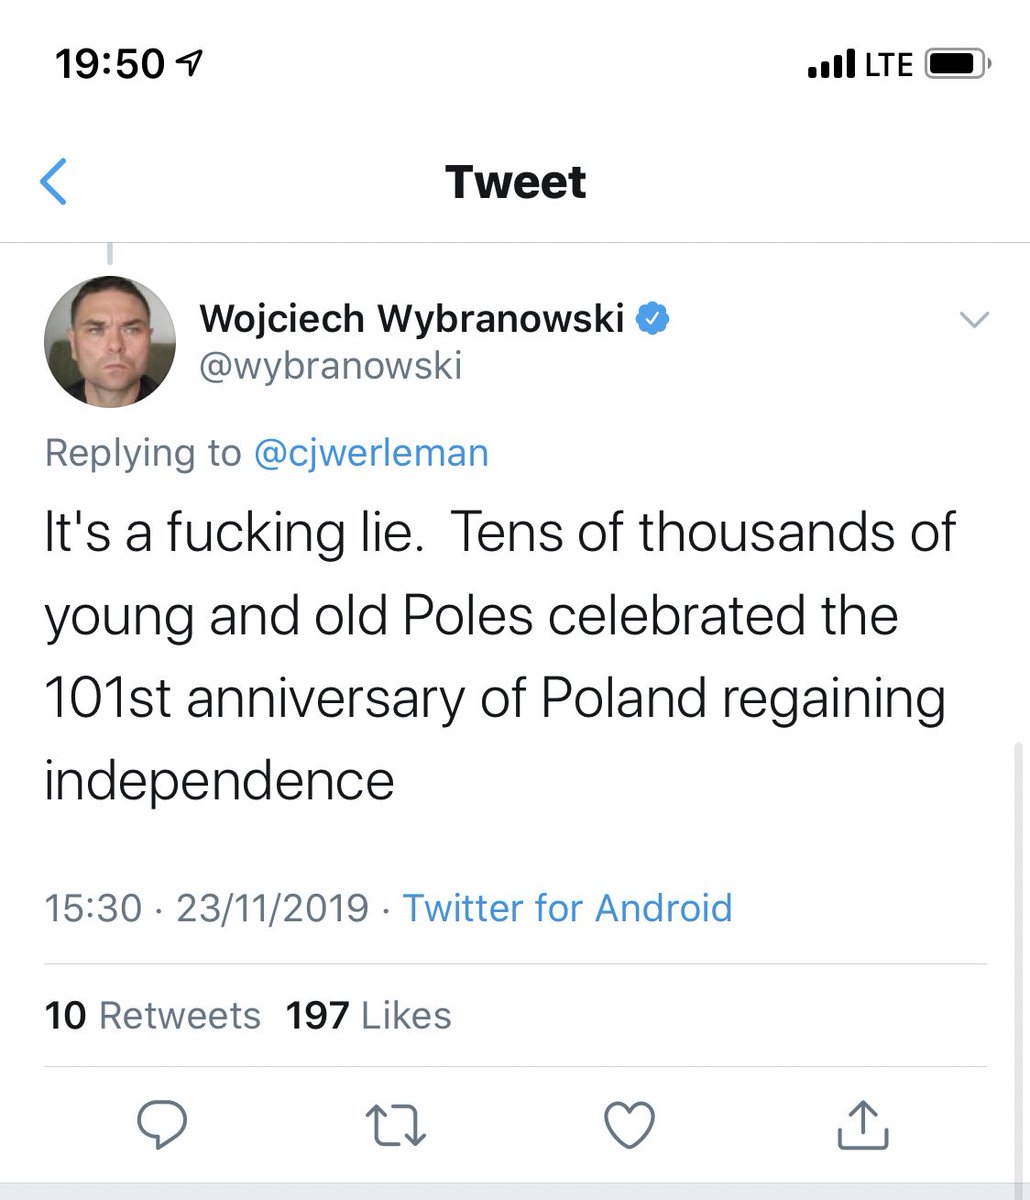 Oh now it is  #fakenews on  #Poland... POLAND ??  why  I wonder who paid him to post  #fakenews on  #Poland ...h/t  @wybranowski